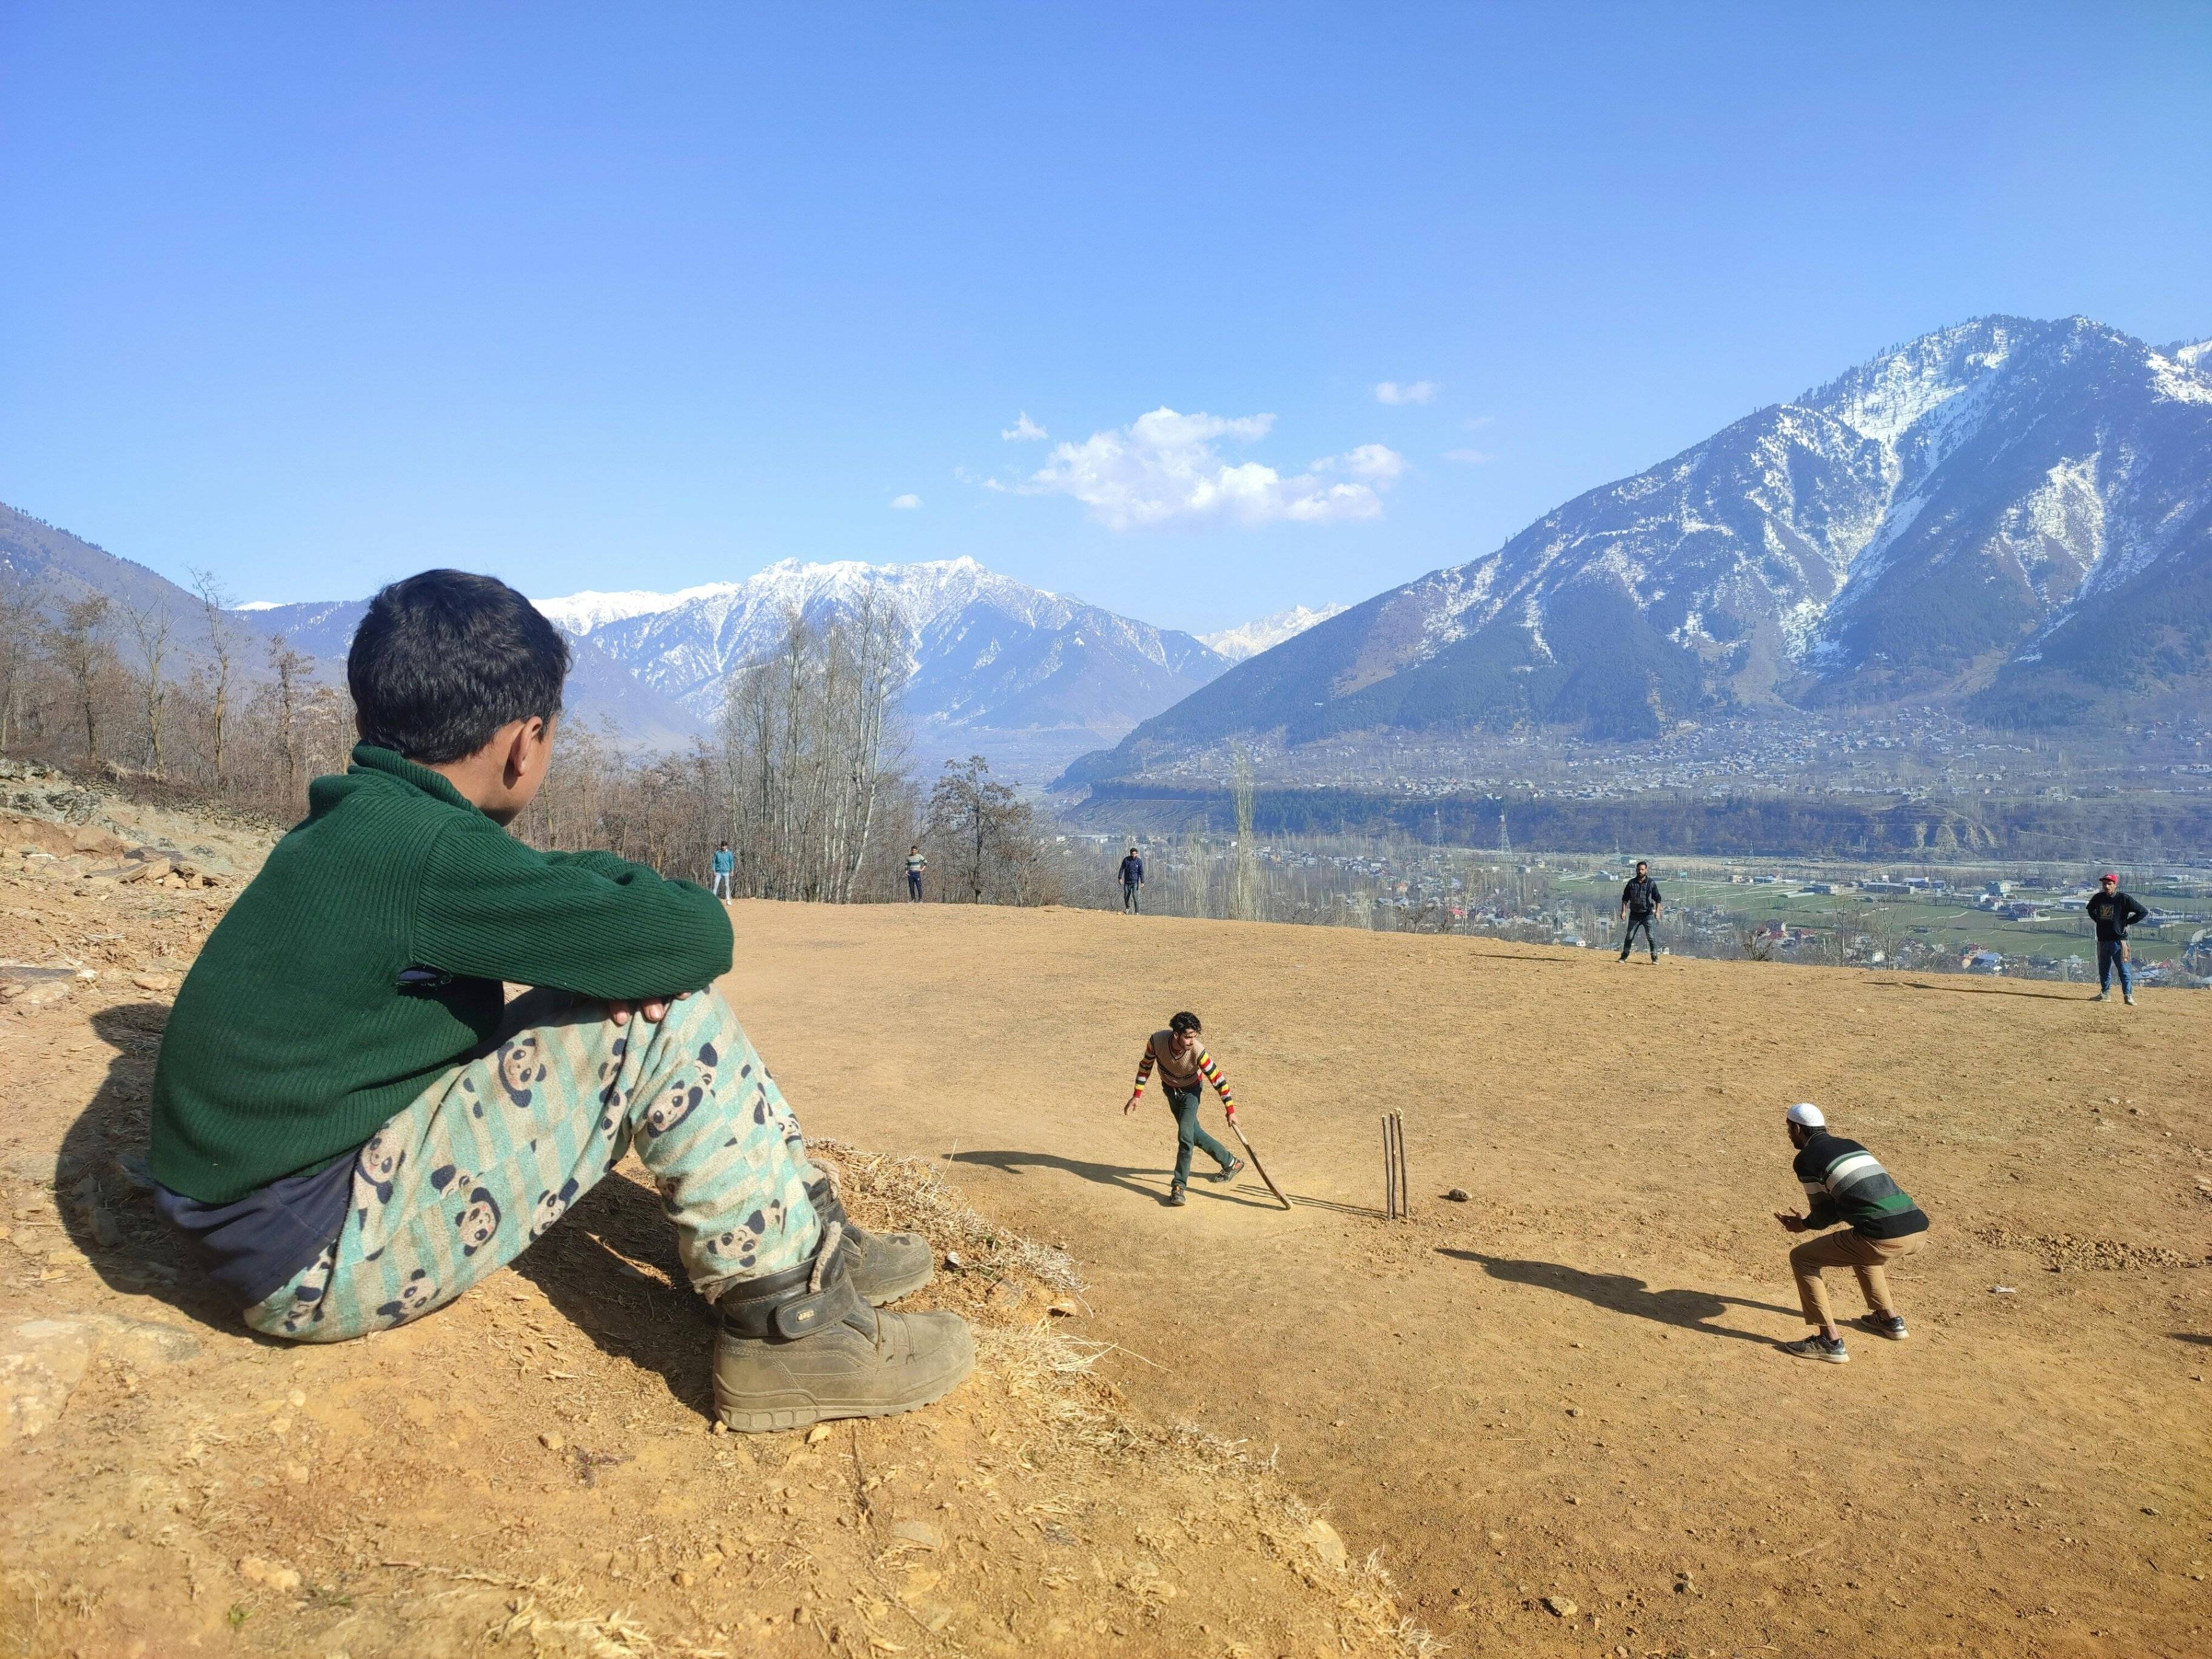 Oferta especial de temporada baja: La Expedición Trans-Himalaya para Todos